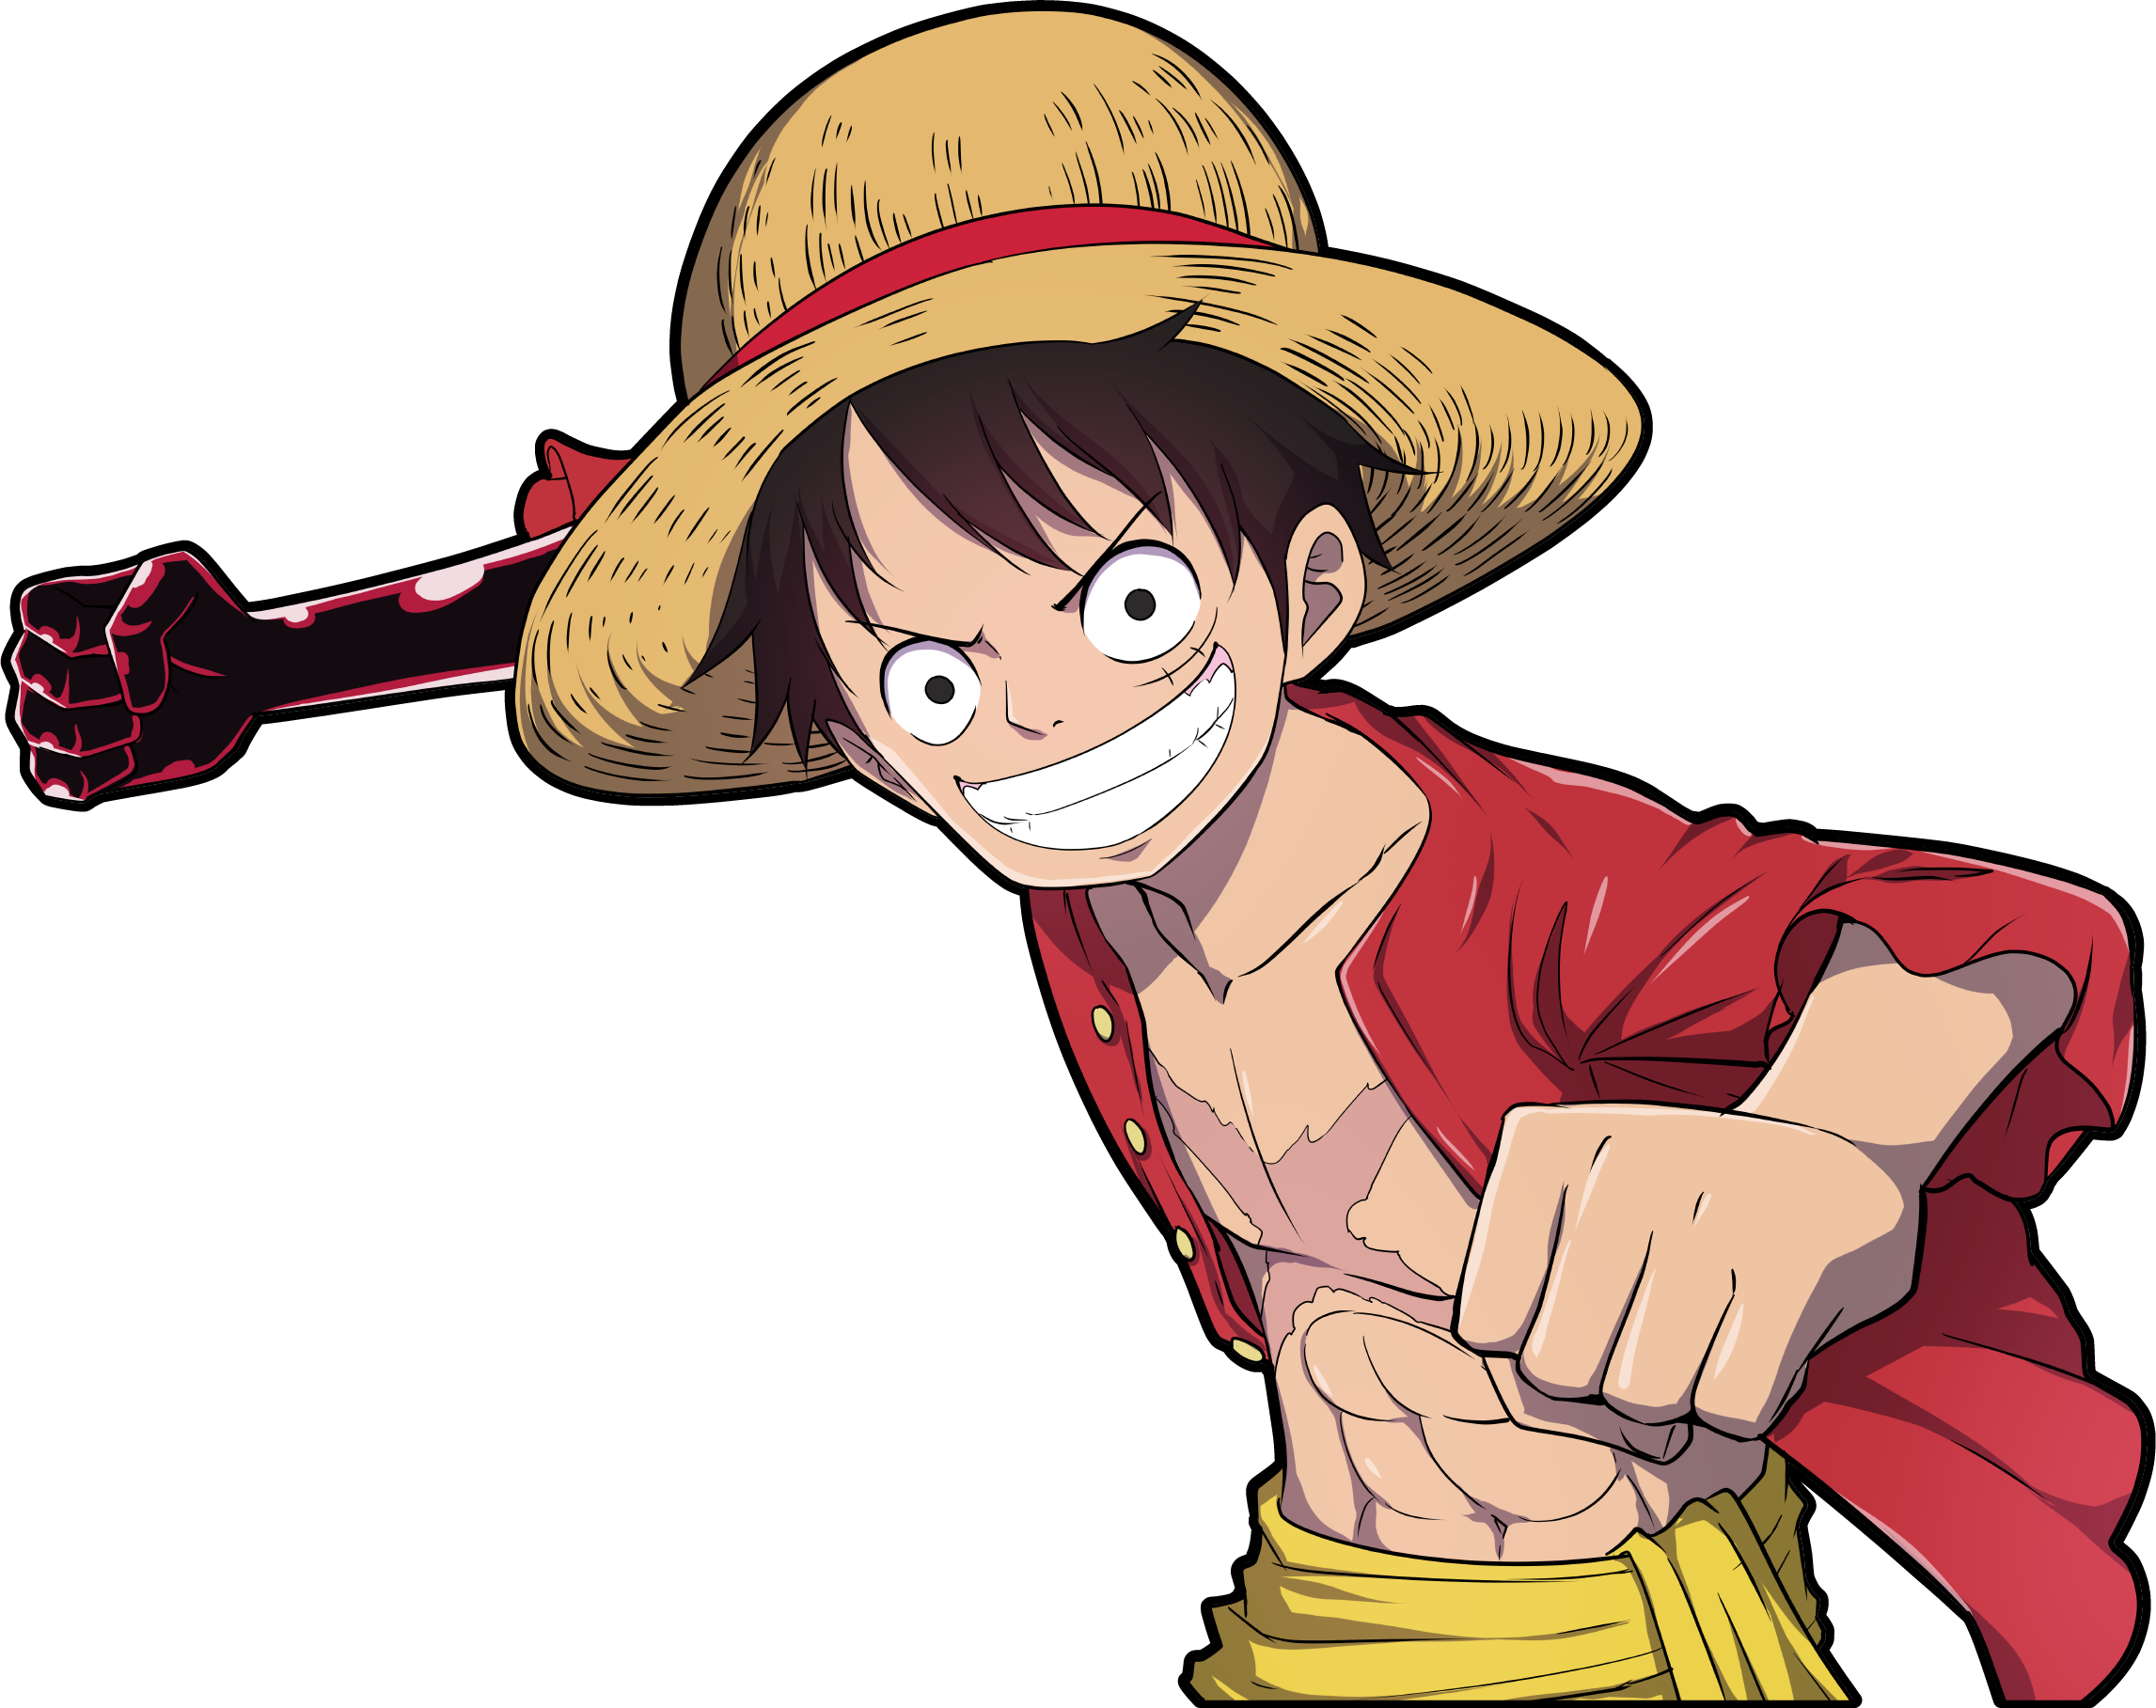 Sticker One Piece - Monkey D. Luffy